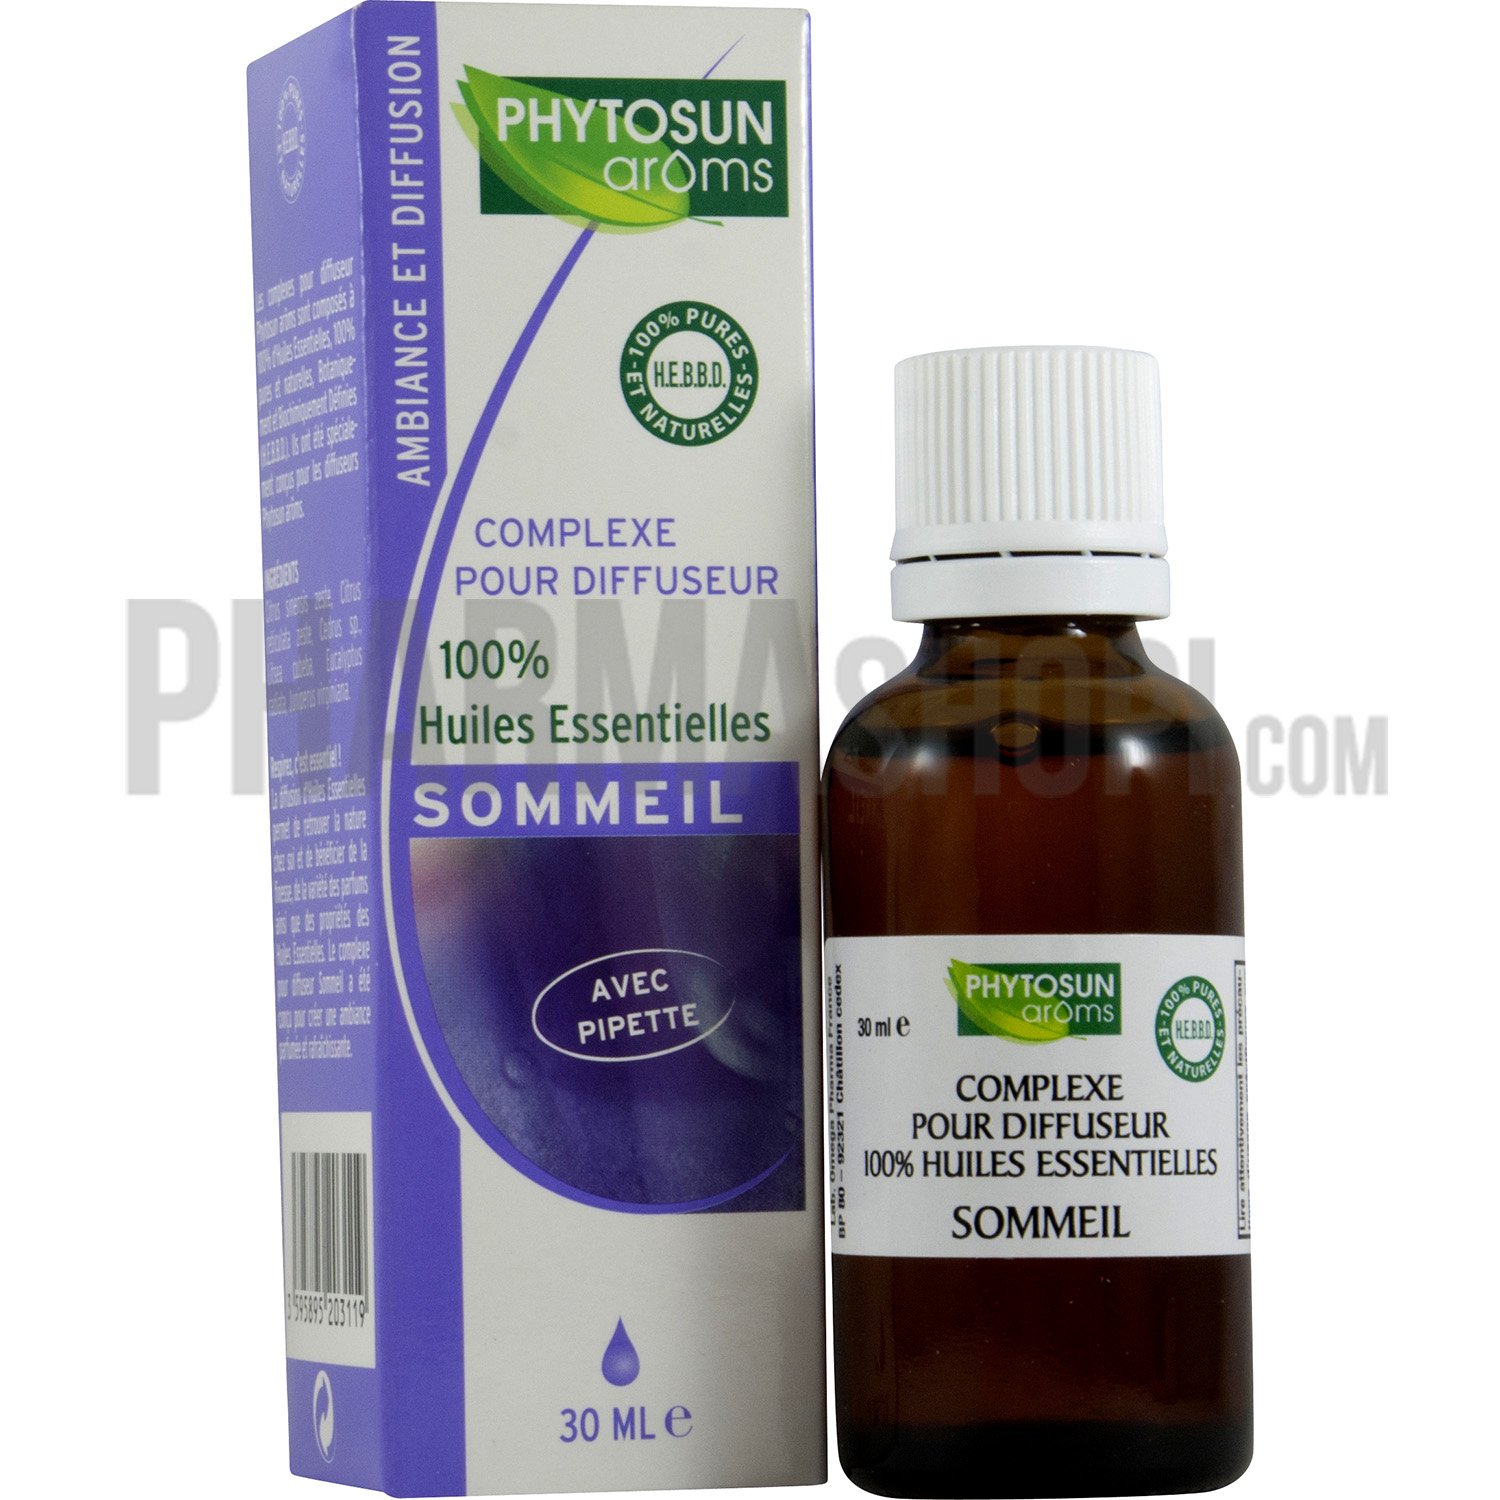 Complexe pour diffuseur sommeil Phytosun arôms, flacon de 30 ml